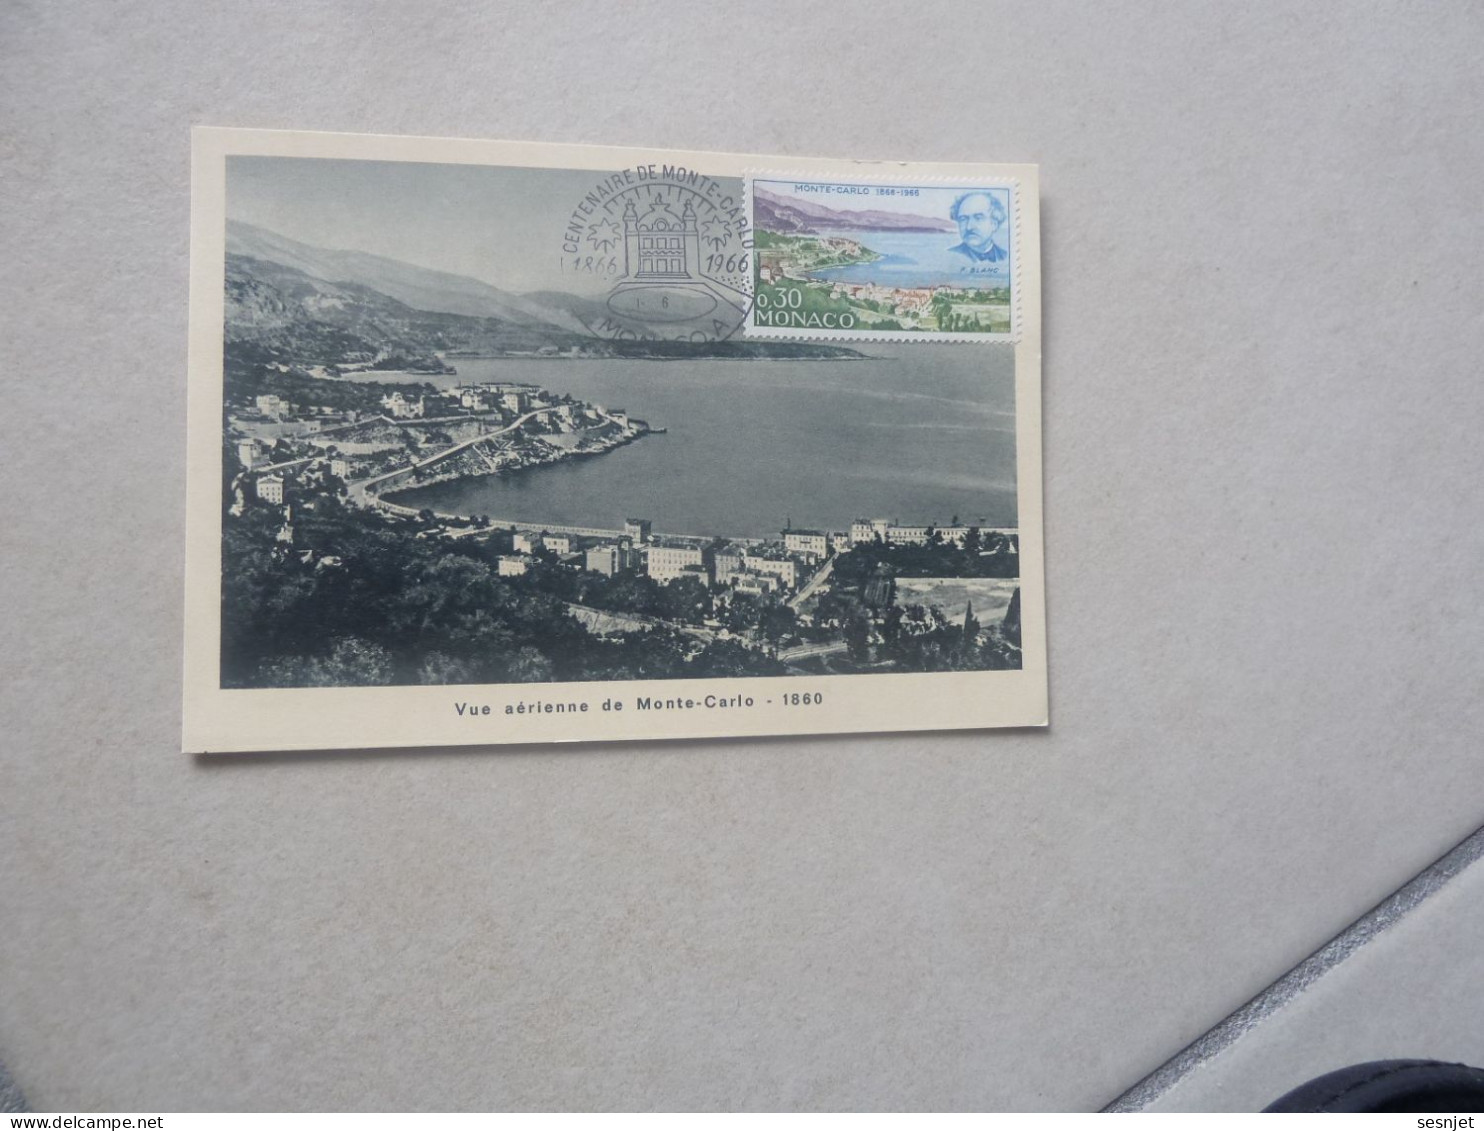 Monaco - Vue Aérienne De Monte-Carlo (1860) - 0f.30 - Yt 697 - Carte Premier Jour D'Emission - Année 1966 - - Cartes-Maximum (CM)